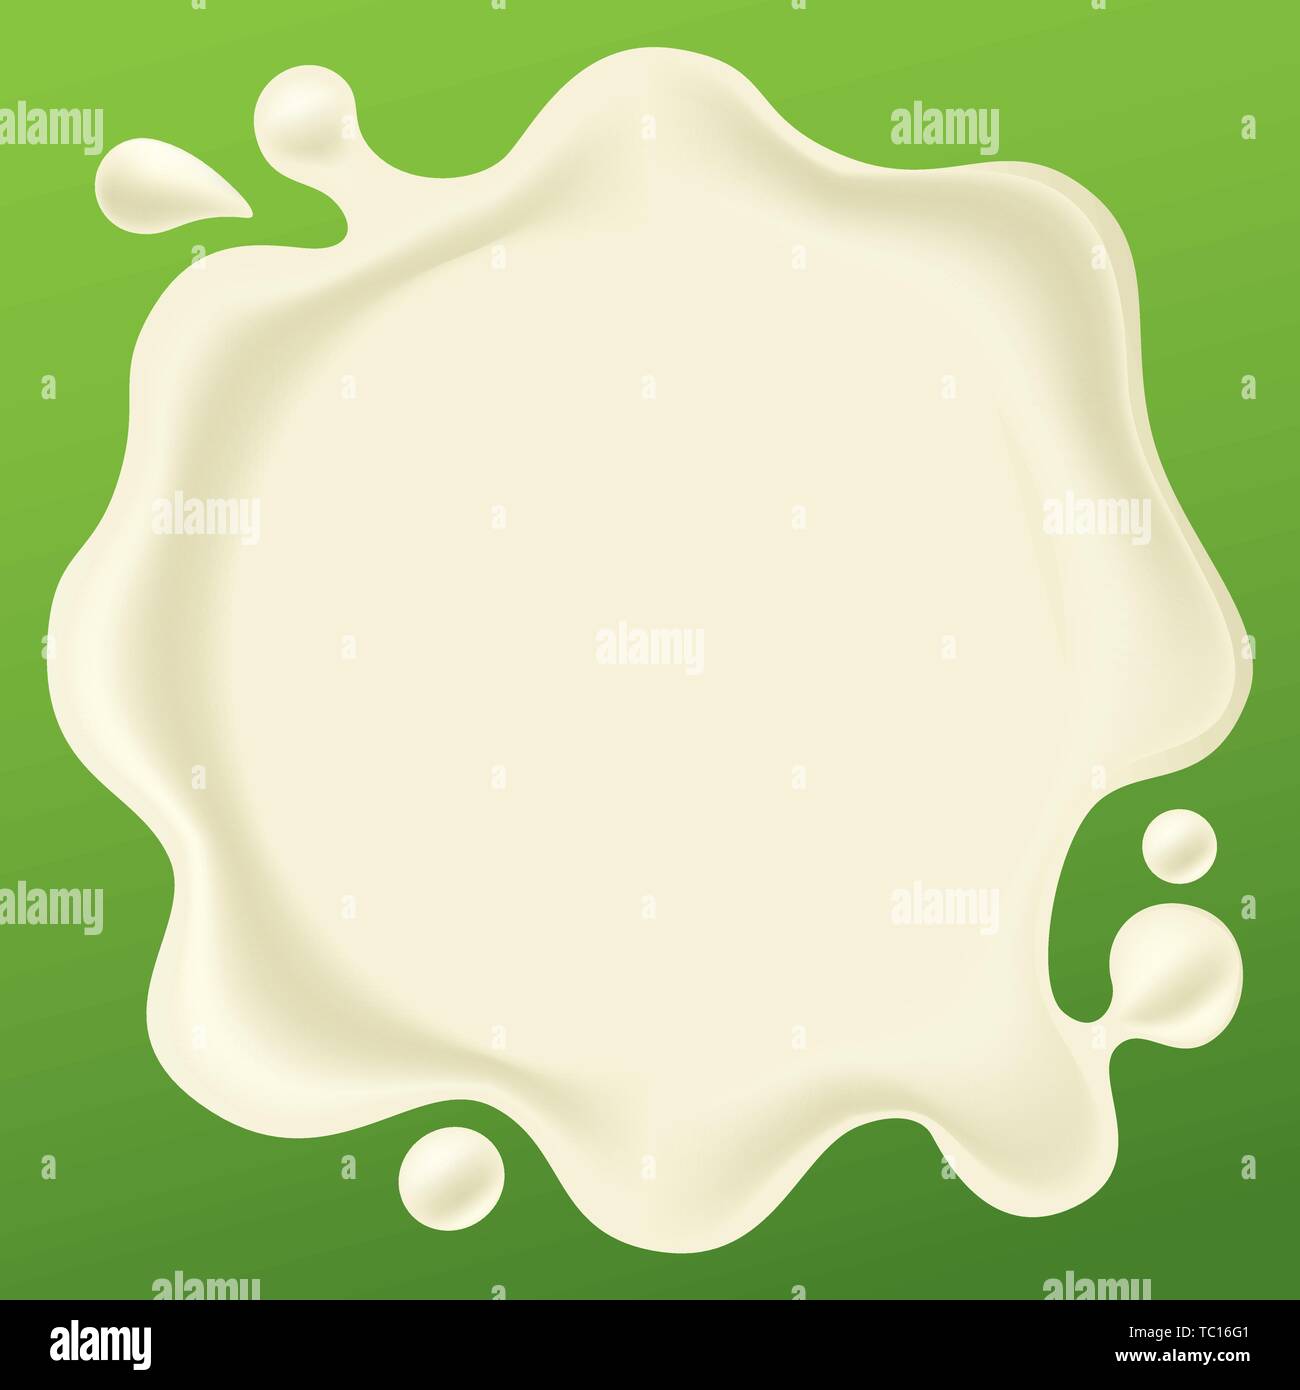 Illustrazione Vettoriale. Morbido e liscio goccia di latte isolato sul verde. Illustrazione Vettoriale